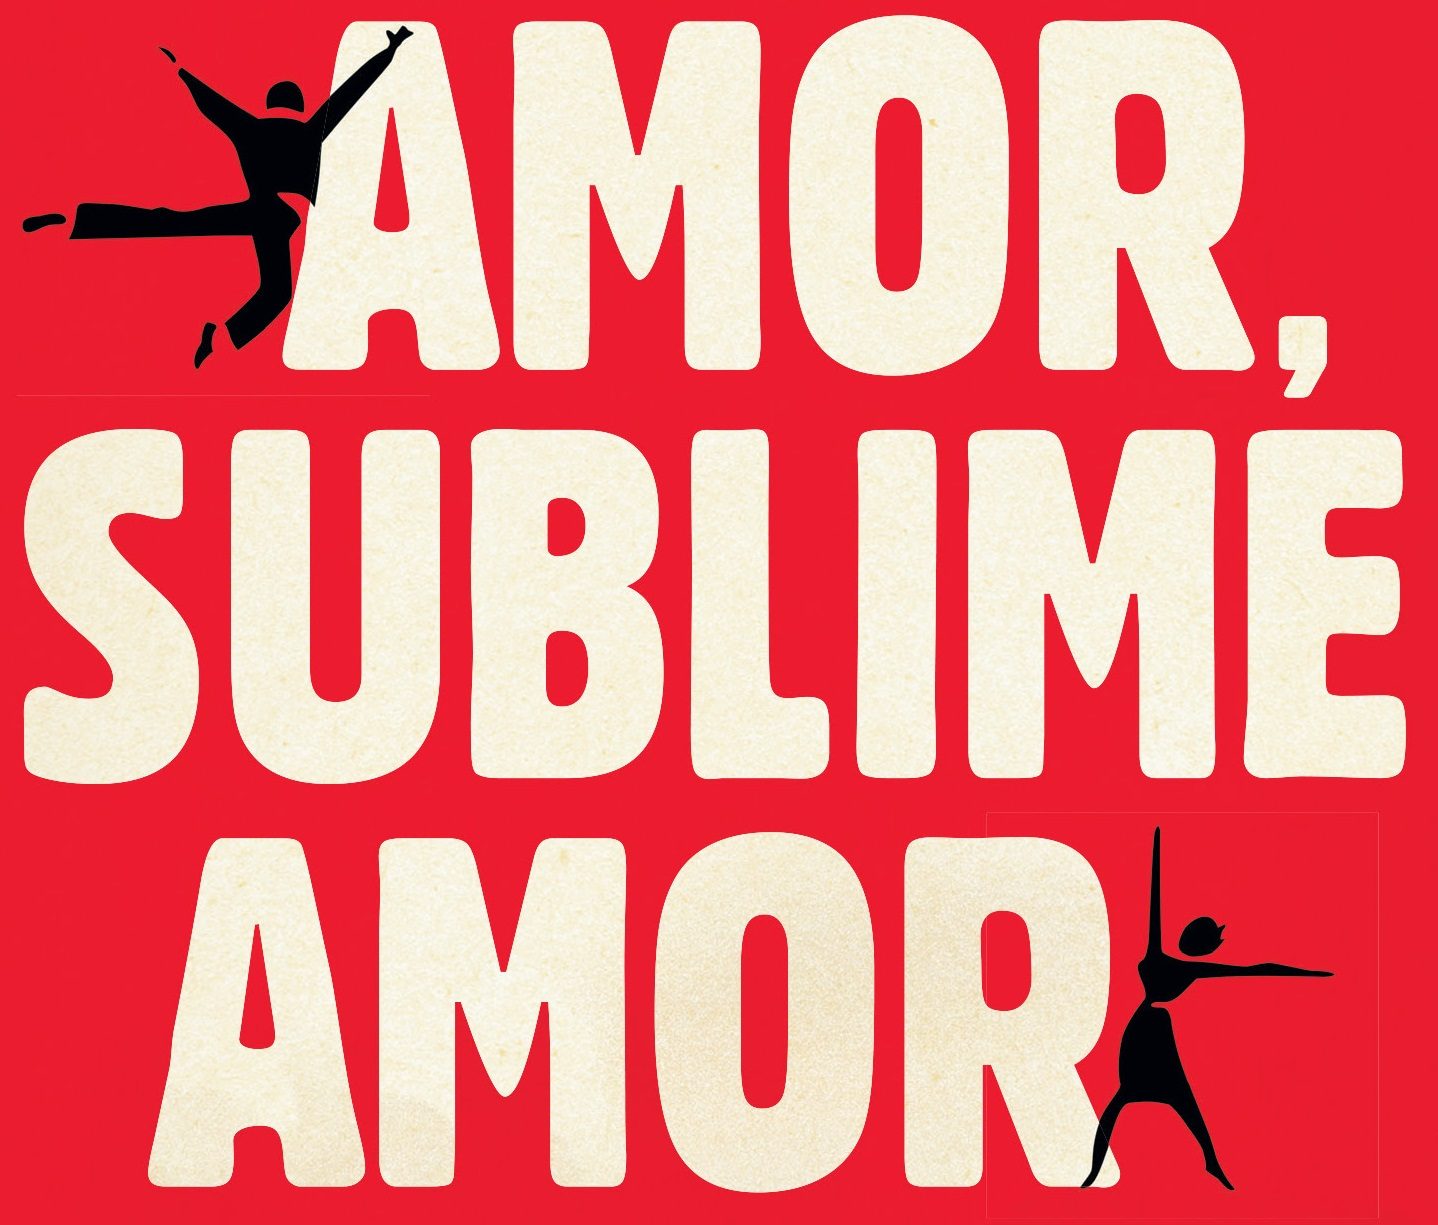 Recorte da capa do livro Amor, Sublime Amor. Vermelha com letras garrafais em bege, e a silhueta preta de duas pessoas dançando